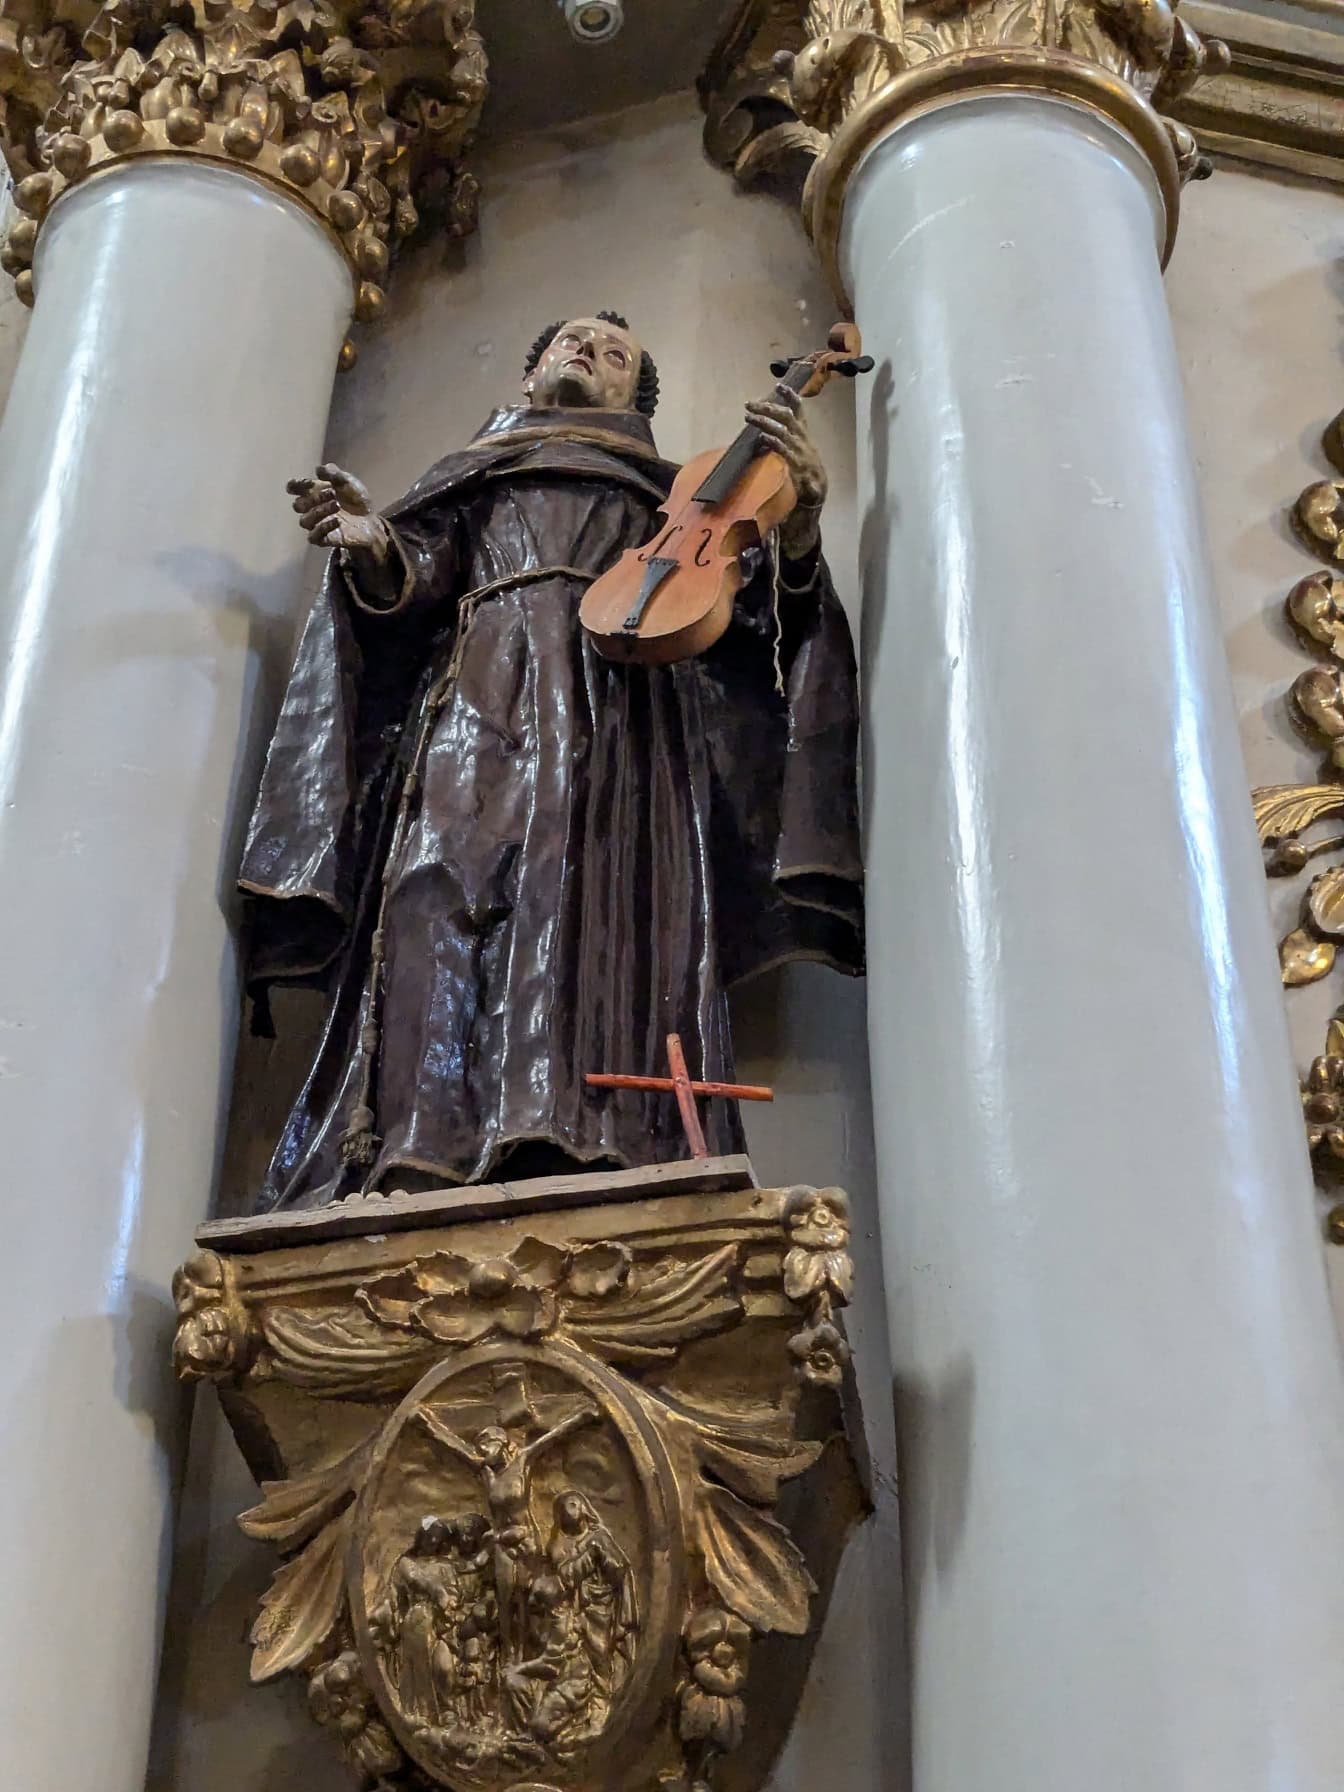 Patung orang suci memegang biola di antara kolom di gereja